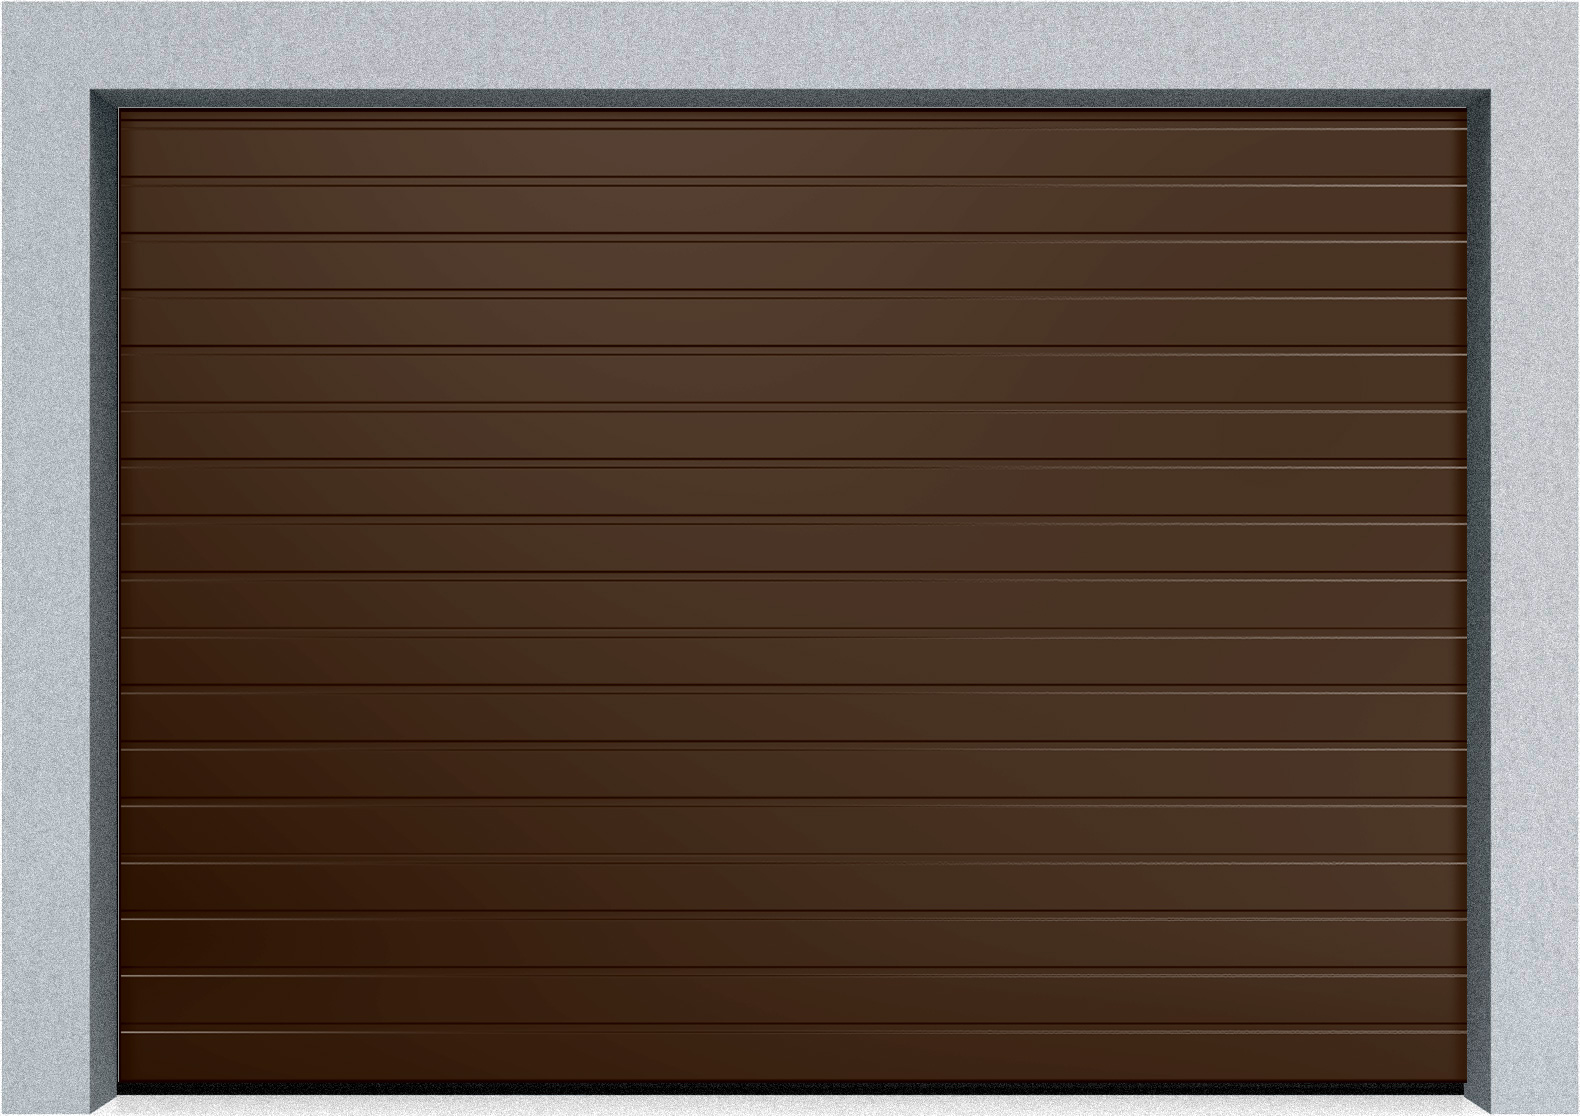  Секционные промышленные ворота DoorHan ISD ThermalPro 2000x7500 S-гофр, M-гофр, Микроволна стандартные цвета, фото 2 